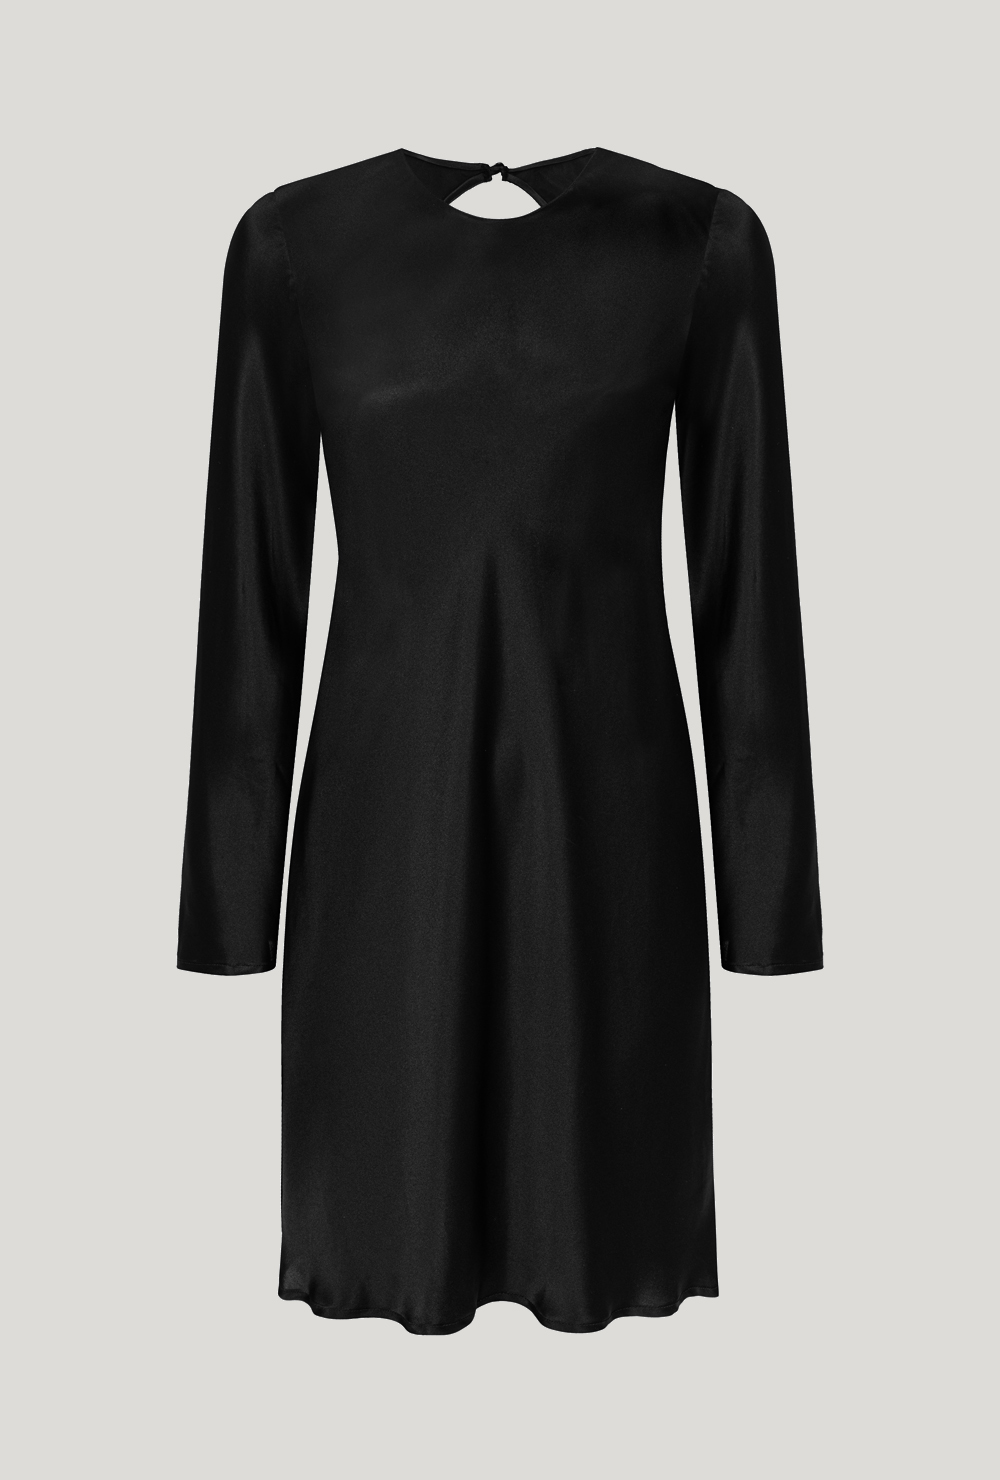 Black silk mini dress with long sleeves and cutout on the back Czarna jedwabna sukienka mini z długim rękawem i wycięciem na plecach